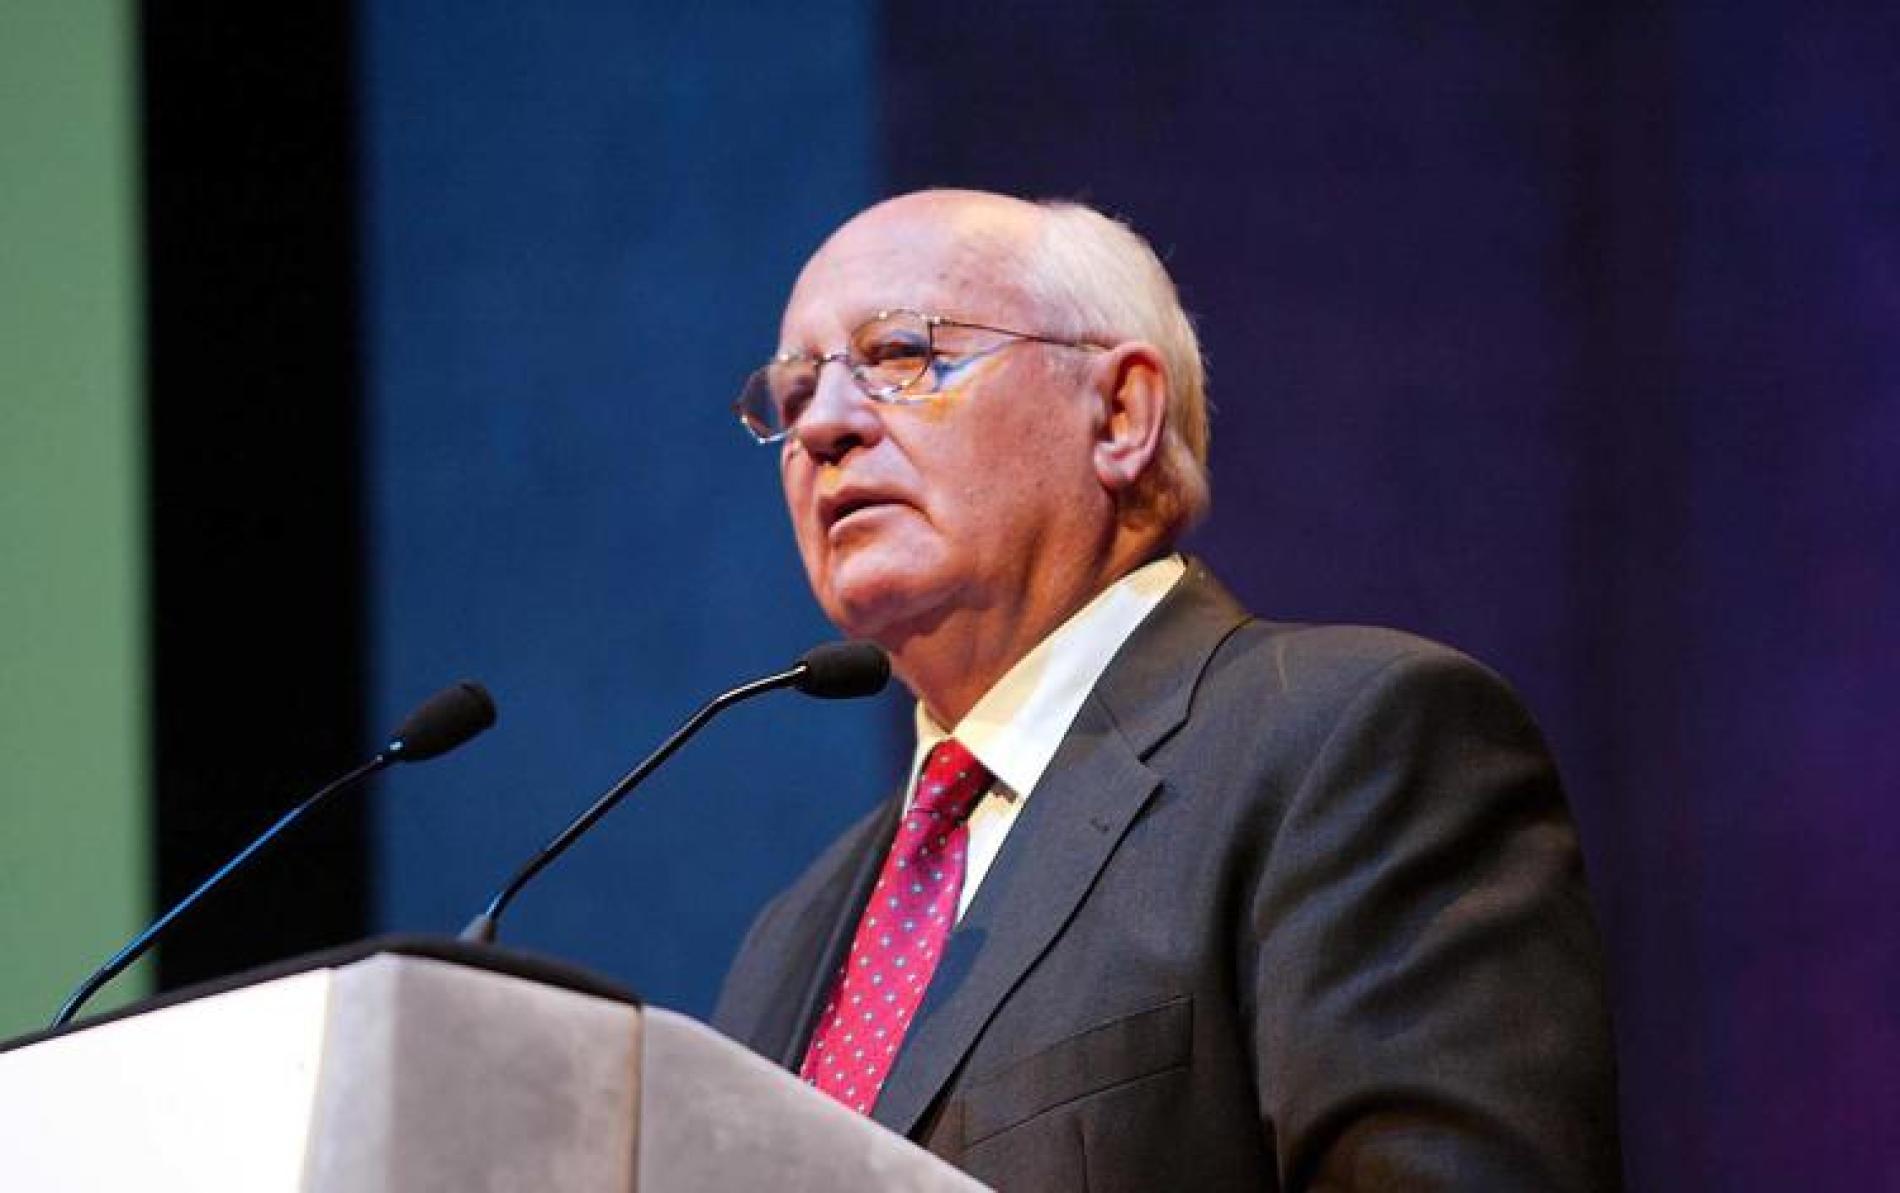 Palenzona ricorda Gorbaciov: «Con il suo World Political Forum oggi il mondo sarebbe diverso»